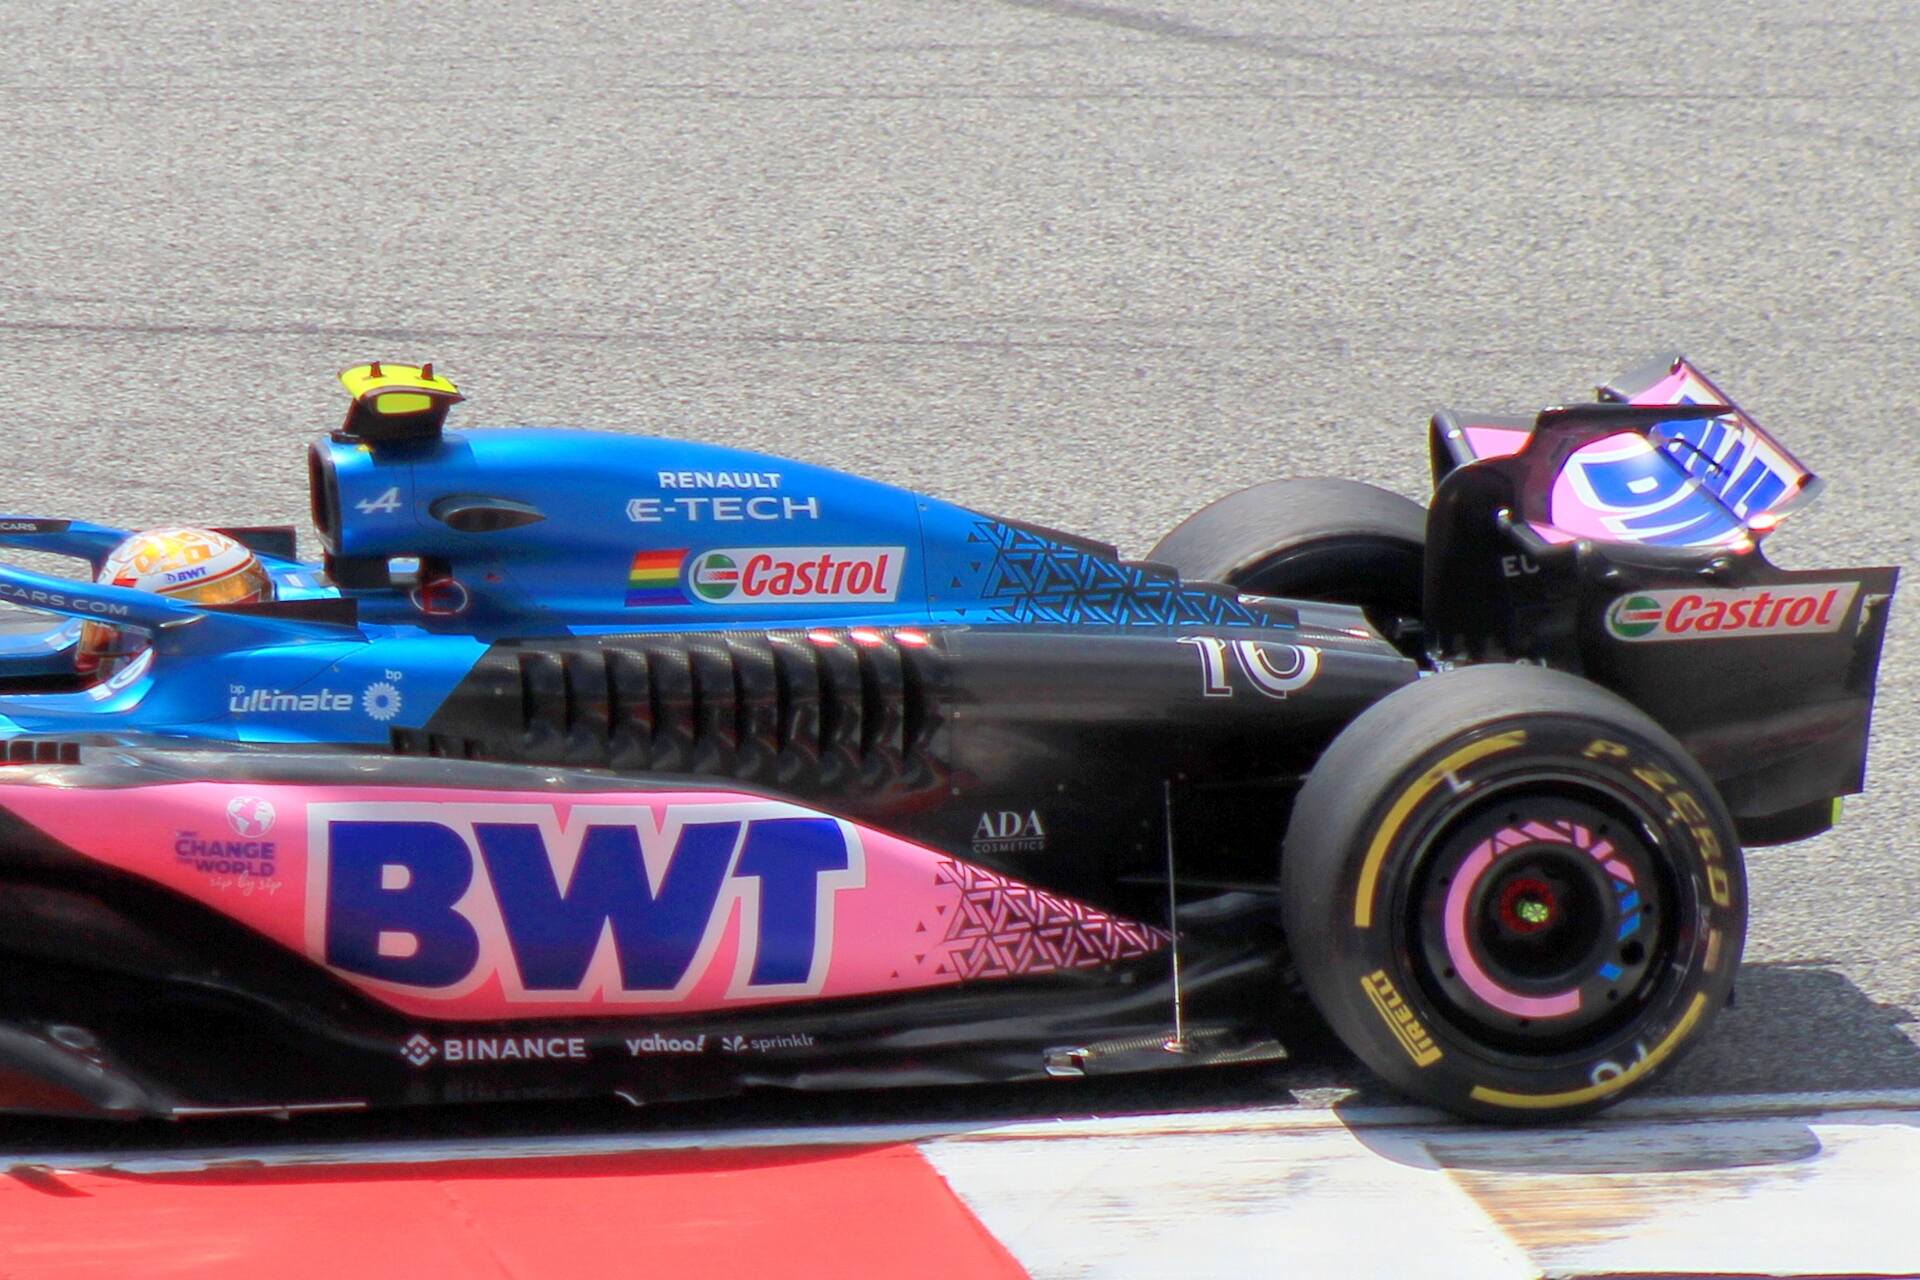 Команда BWT Alpine F1: с 2000 года бренд Castrol является частью группы bp, но сохраняет свою индивидуальность и в Формуле 1.